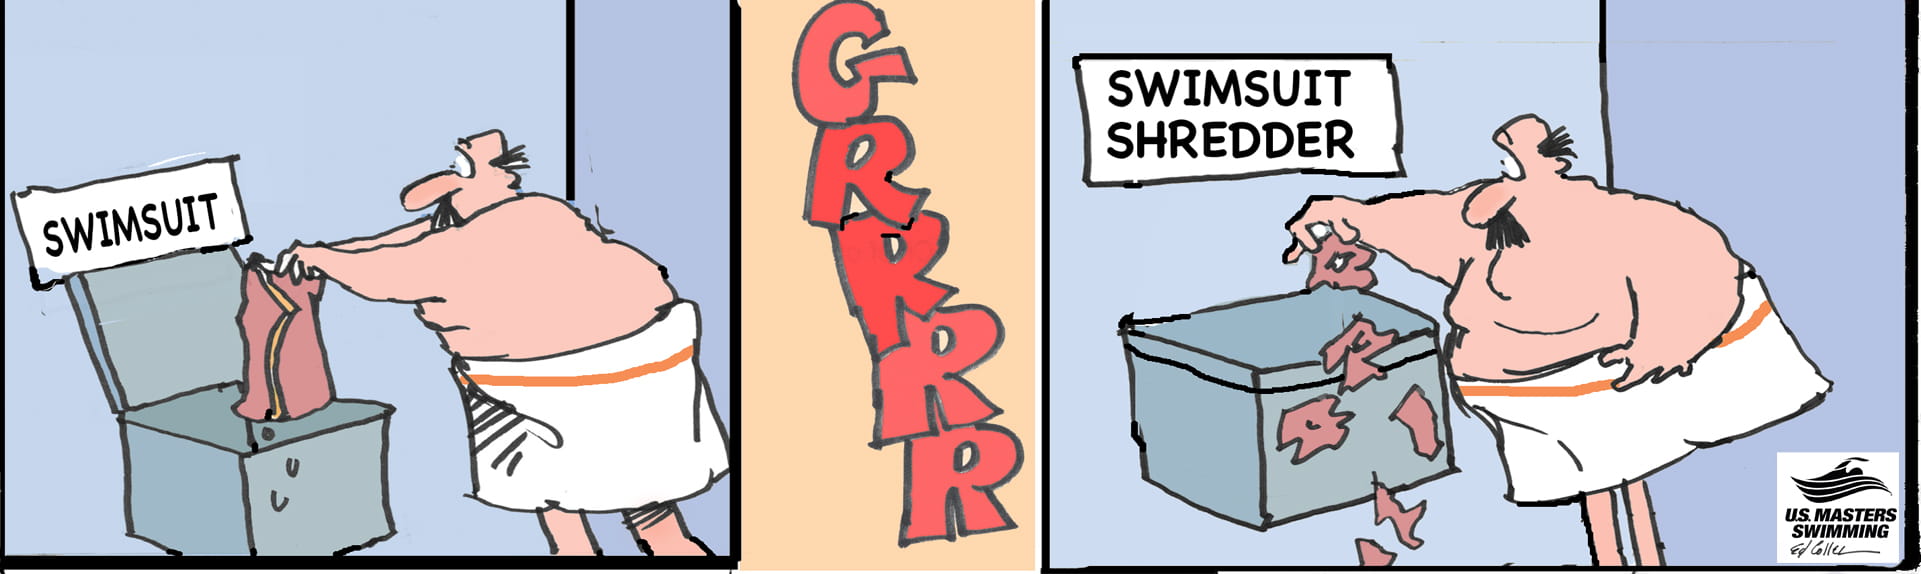 Swimsuit Shredder Graphic